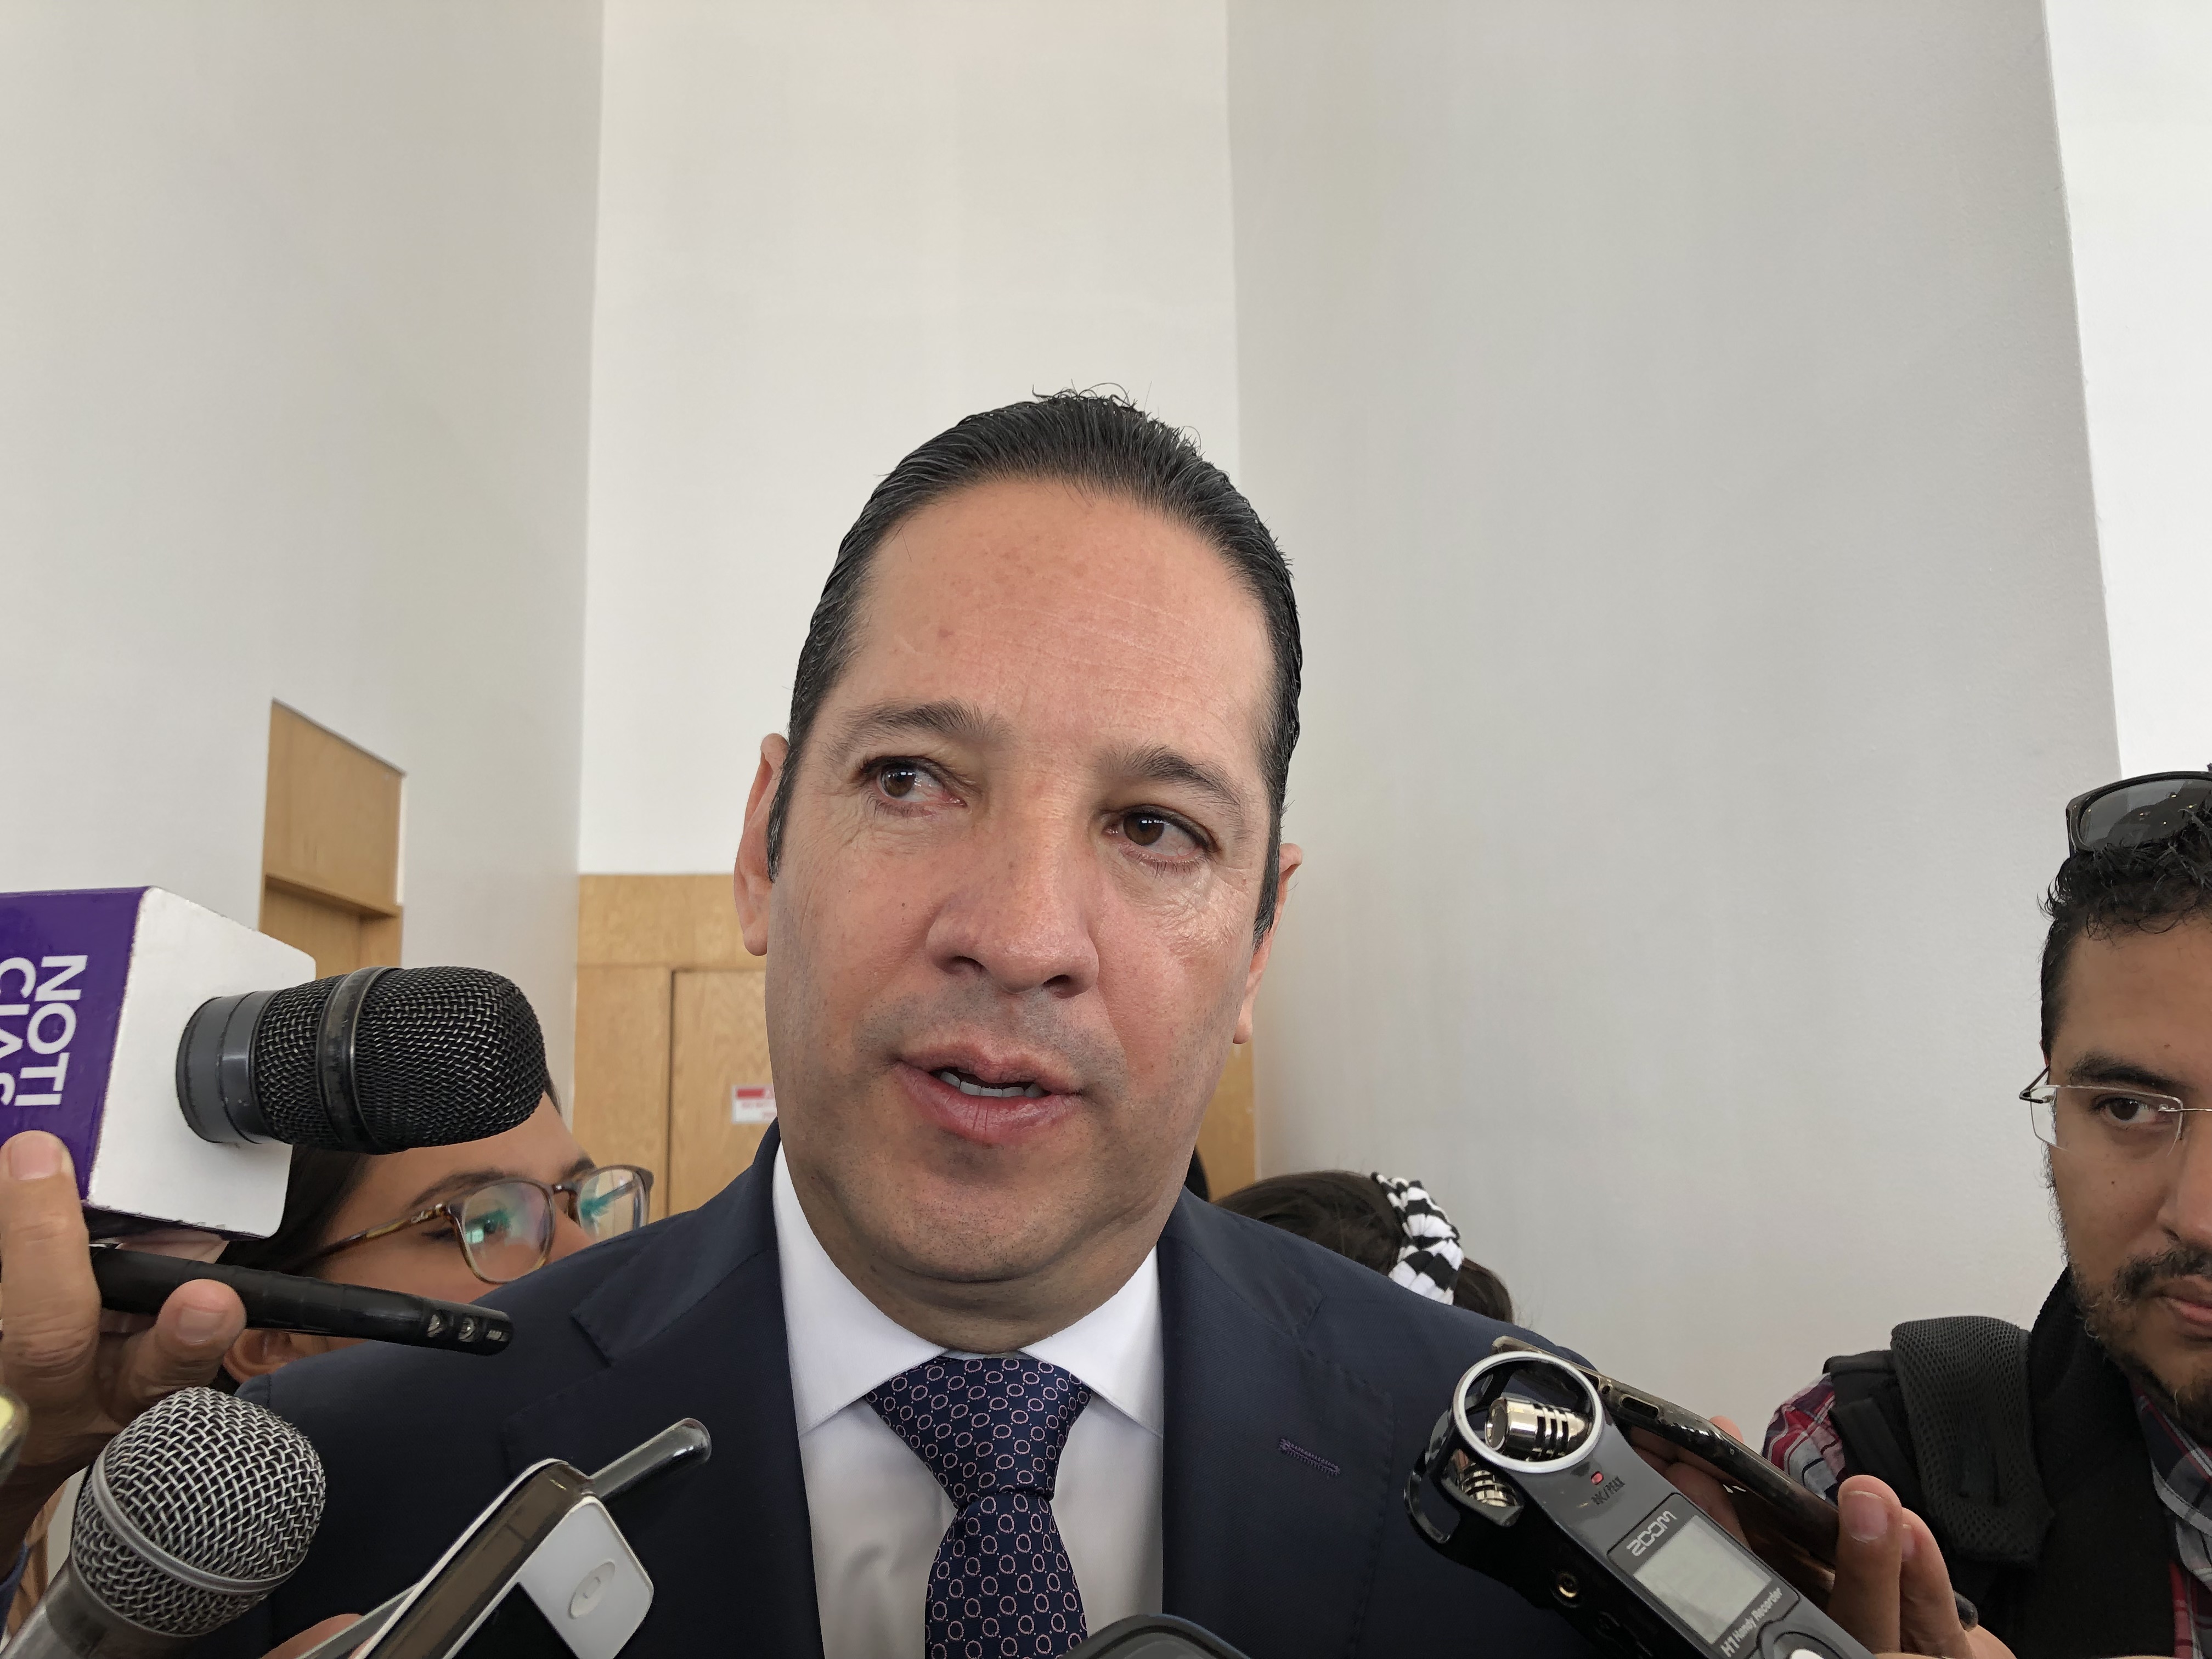  Garantiza gobernador que habrá “cero discriminación” en Querétaro